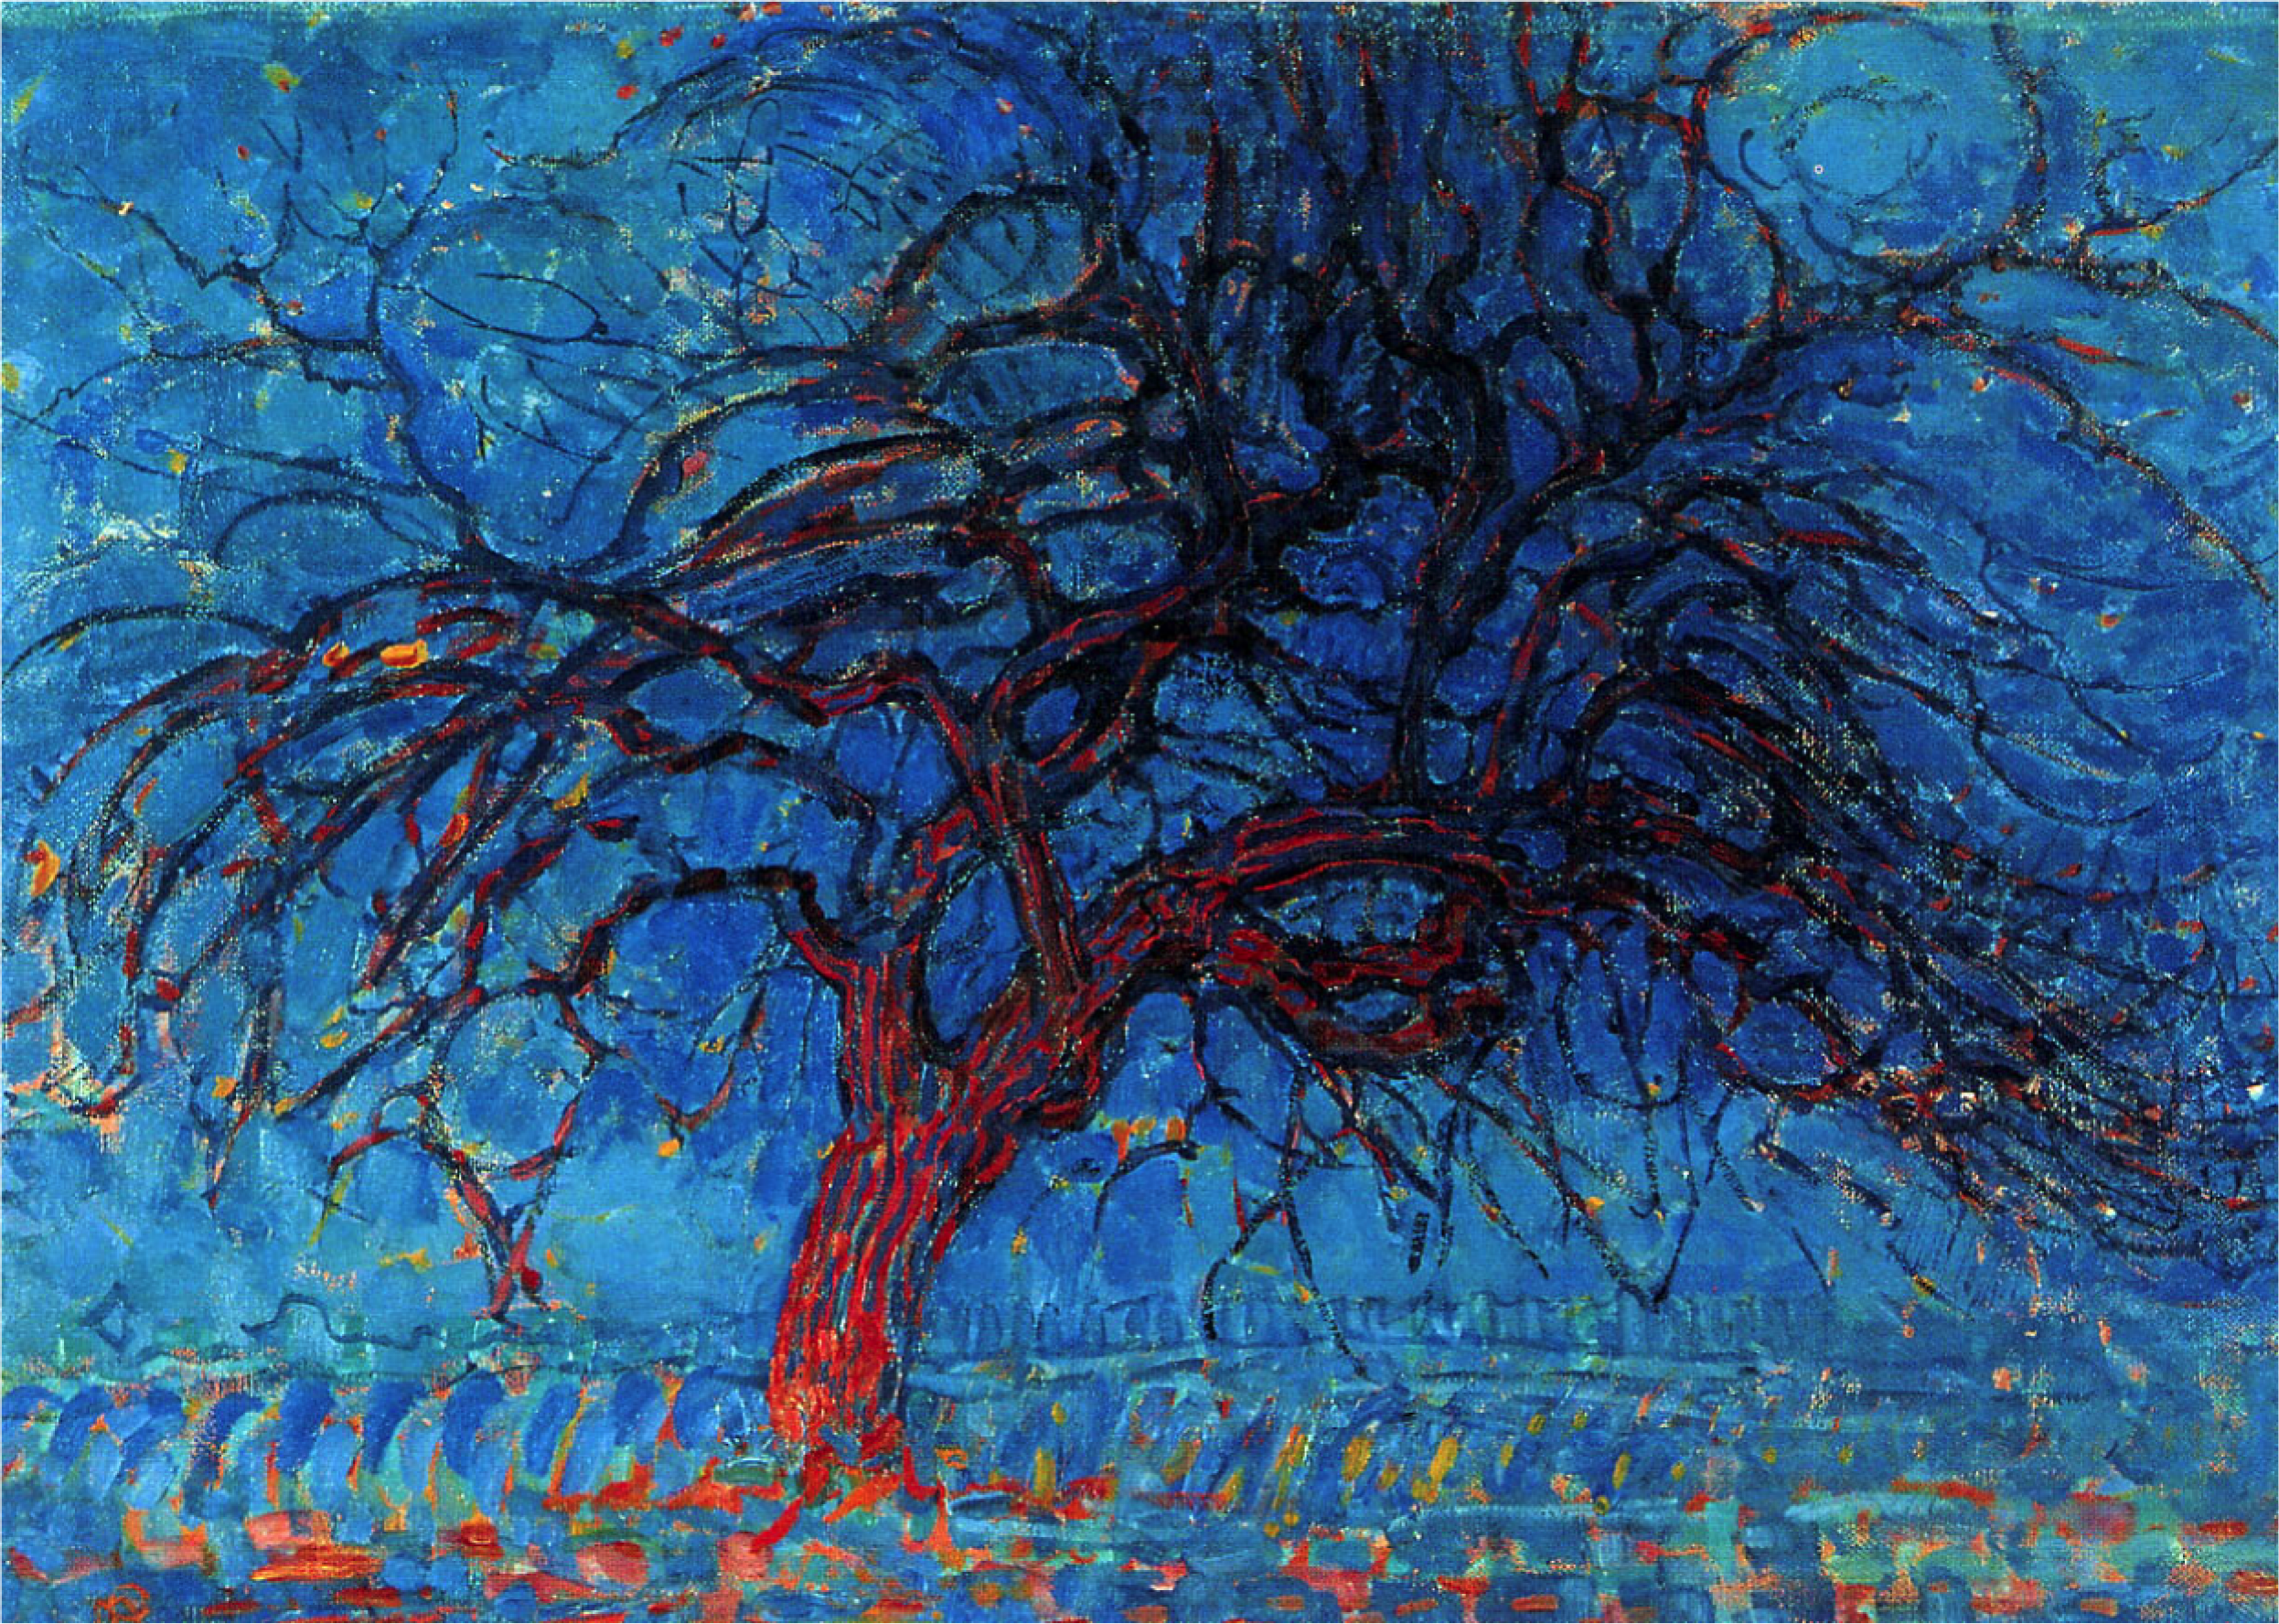 Piet Mondrian, Evening, Red Tree, 1908-1910, Kunstmuseum Den Haag, Hague, Netherlands.